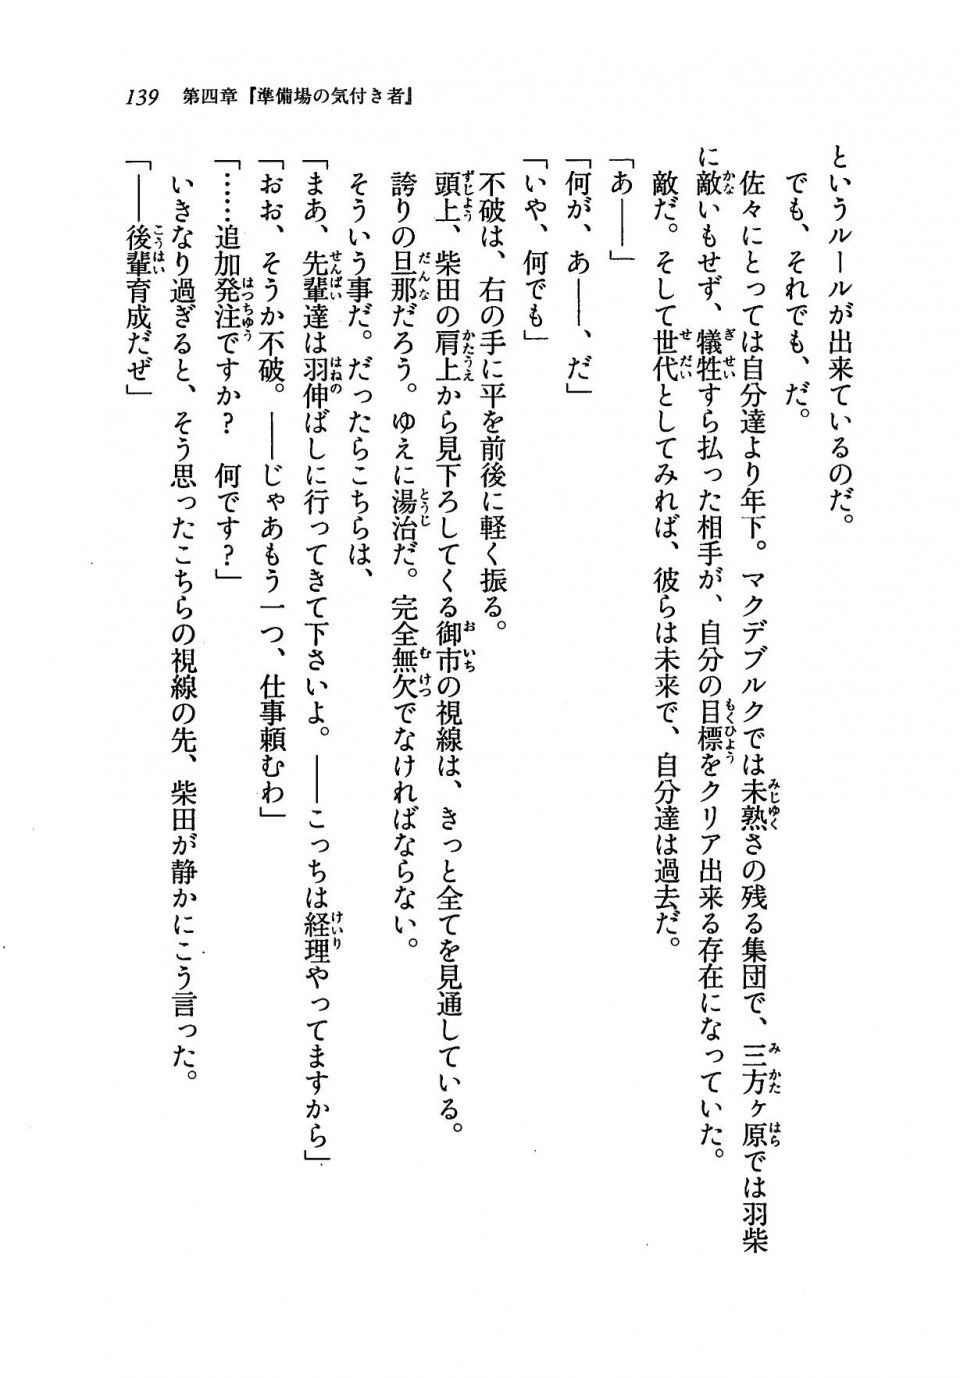 Kyoukai Senjou no Horizon LN Vol 19(8A) - Photo #139